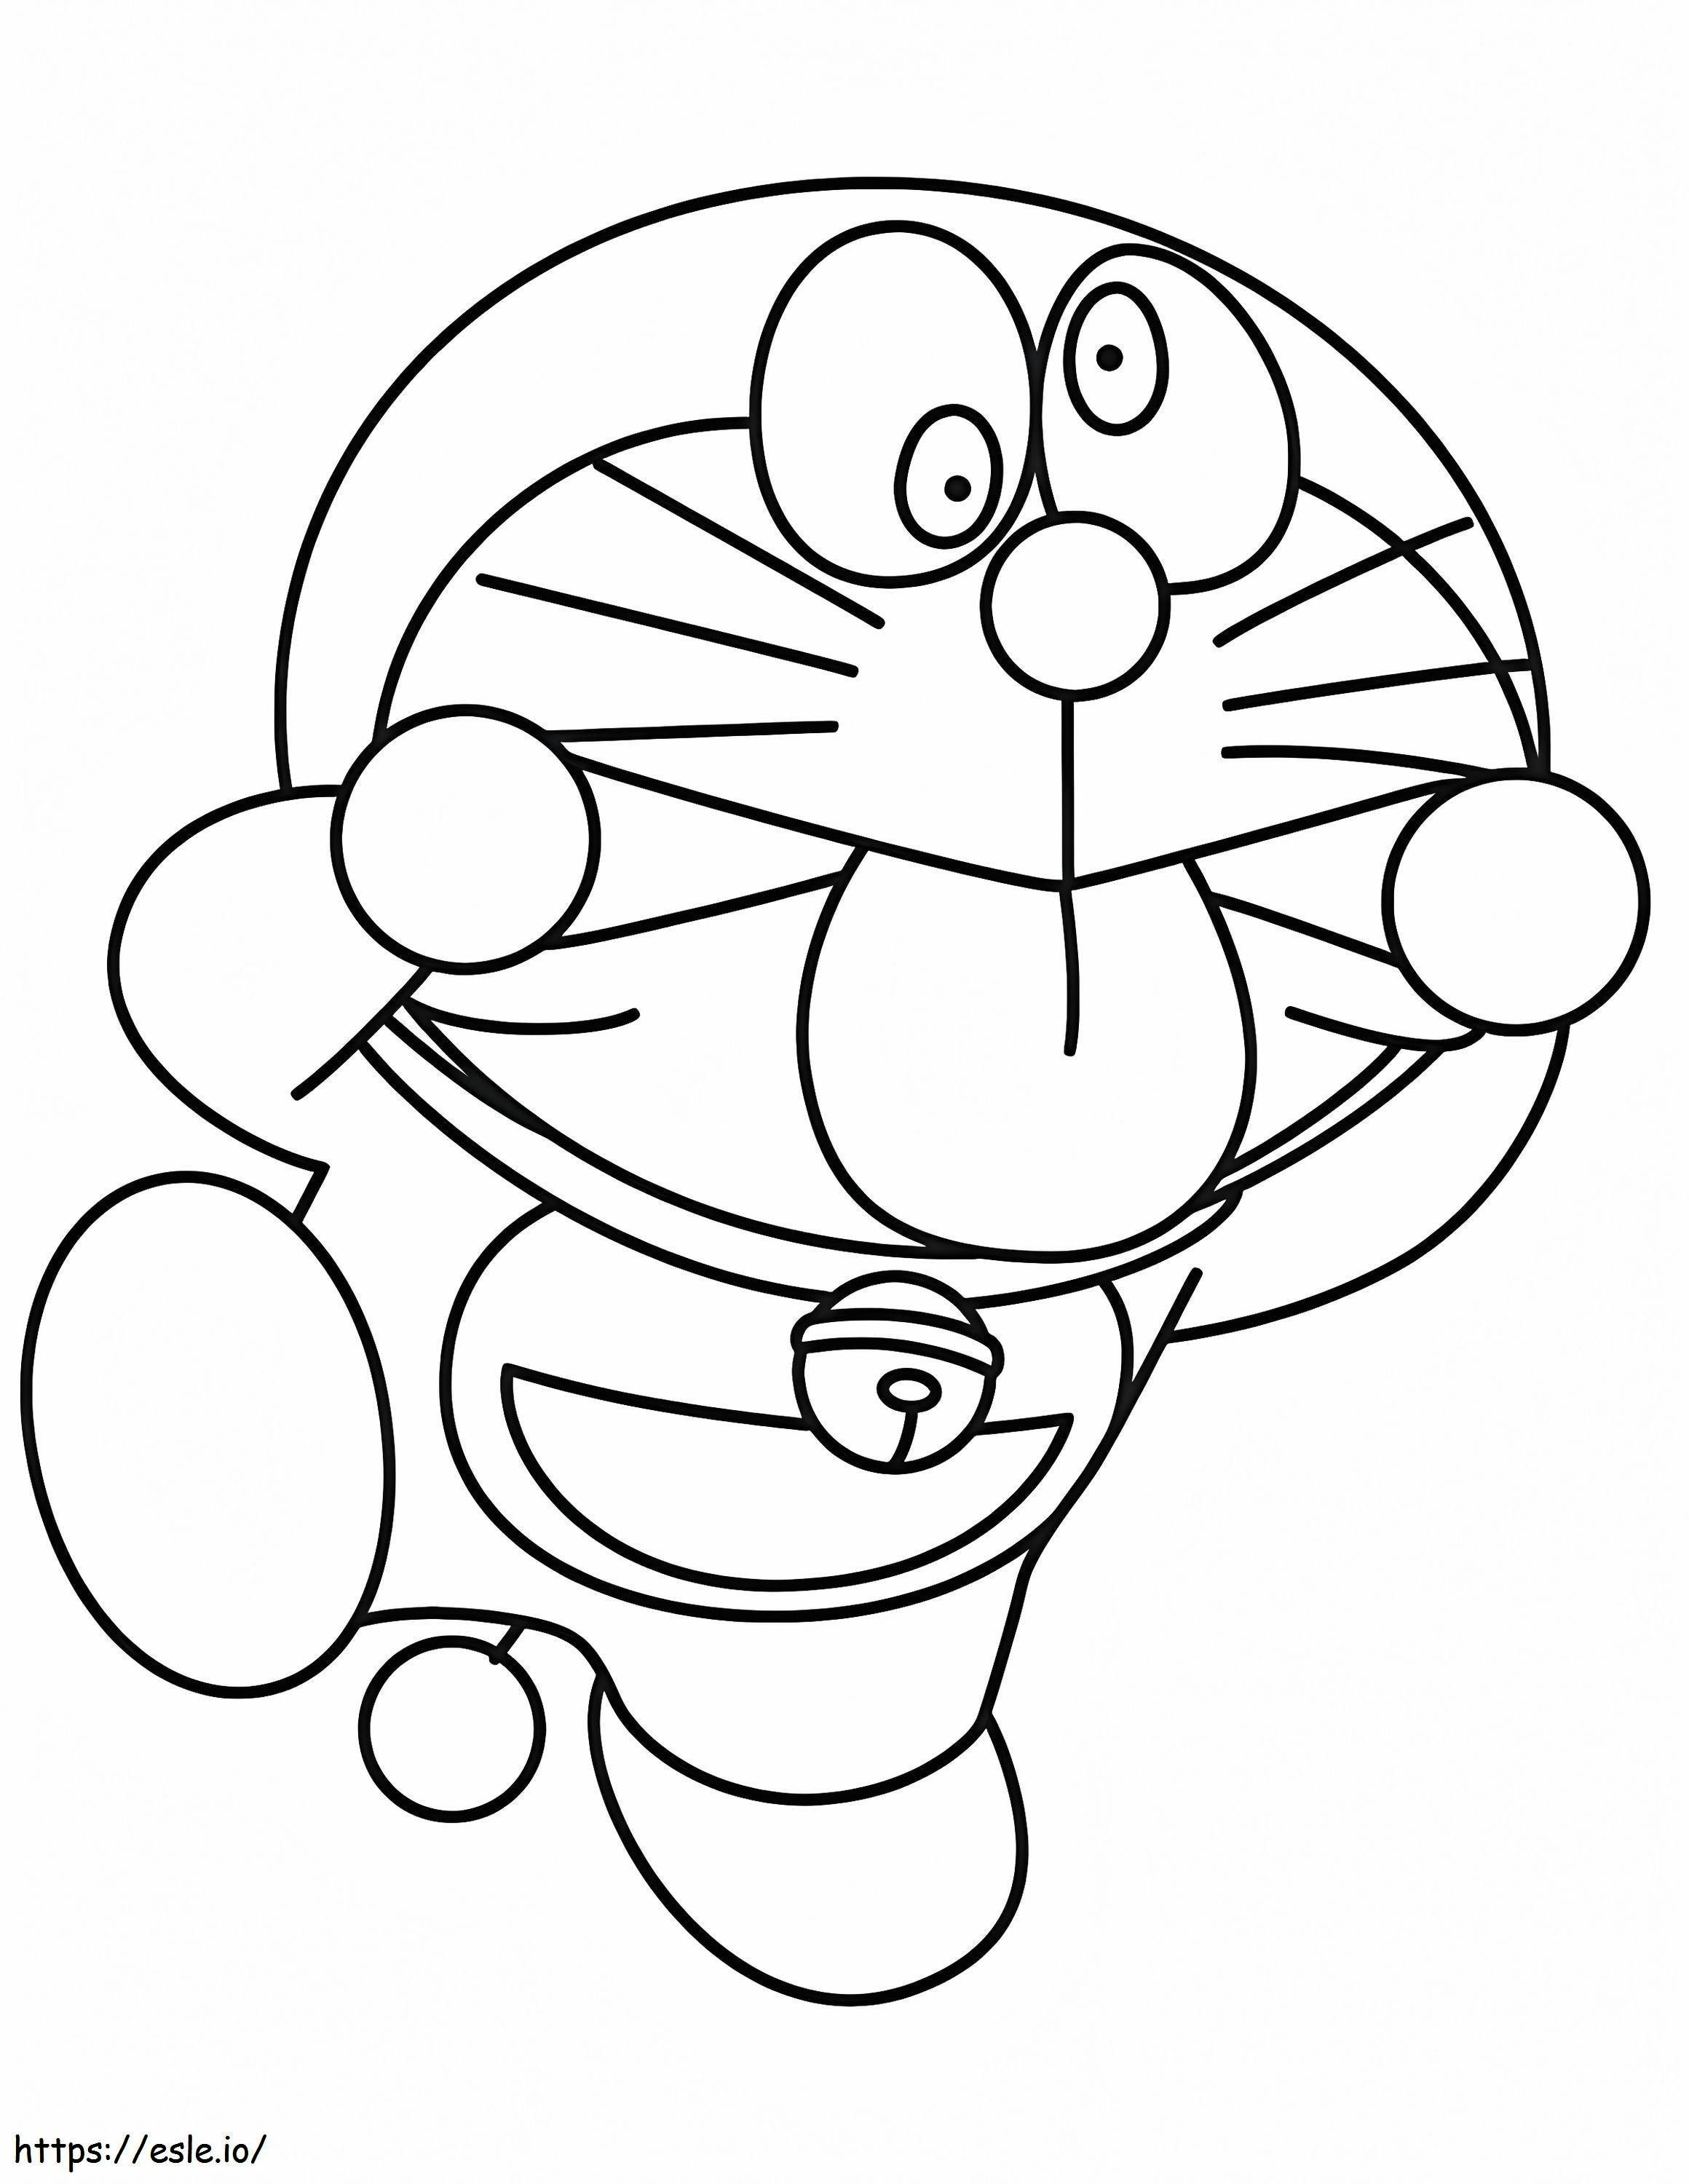  Divertido Doraemon A4 para colorear